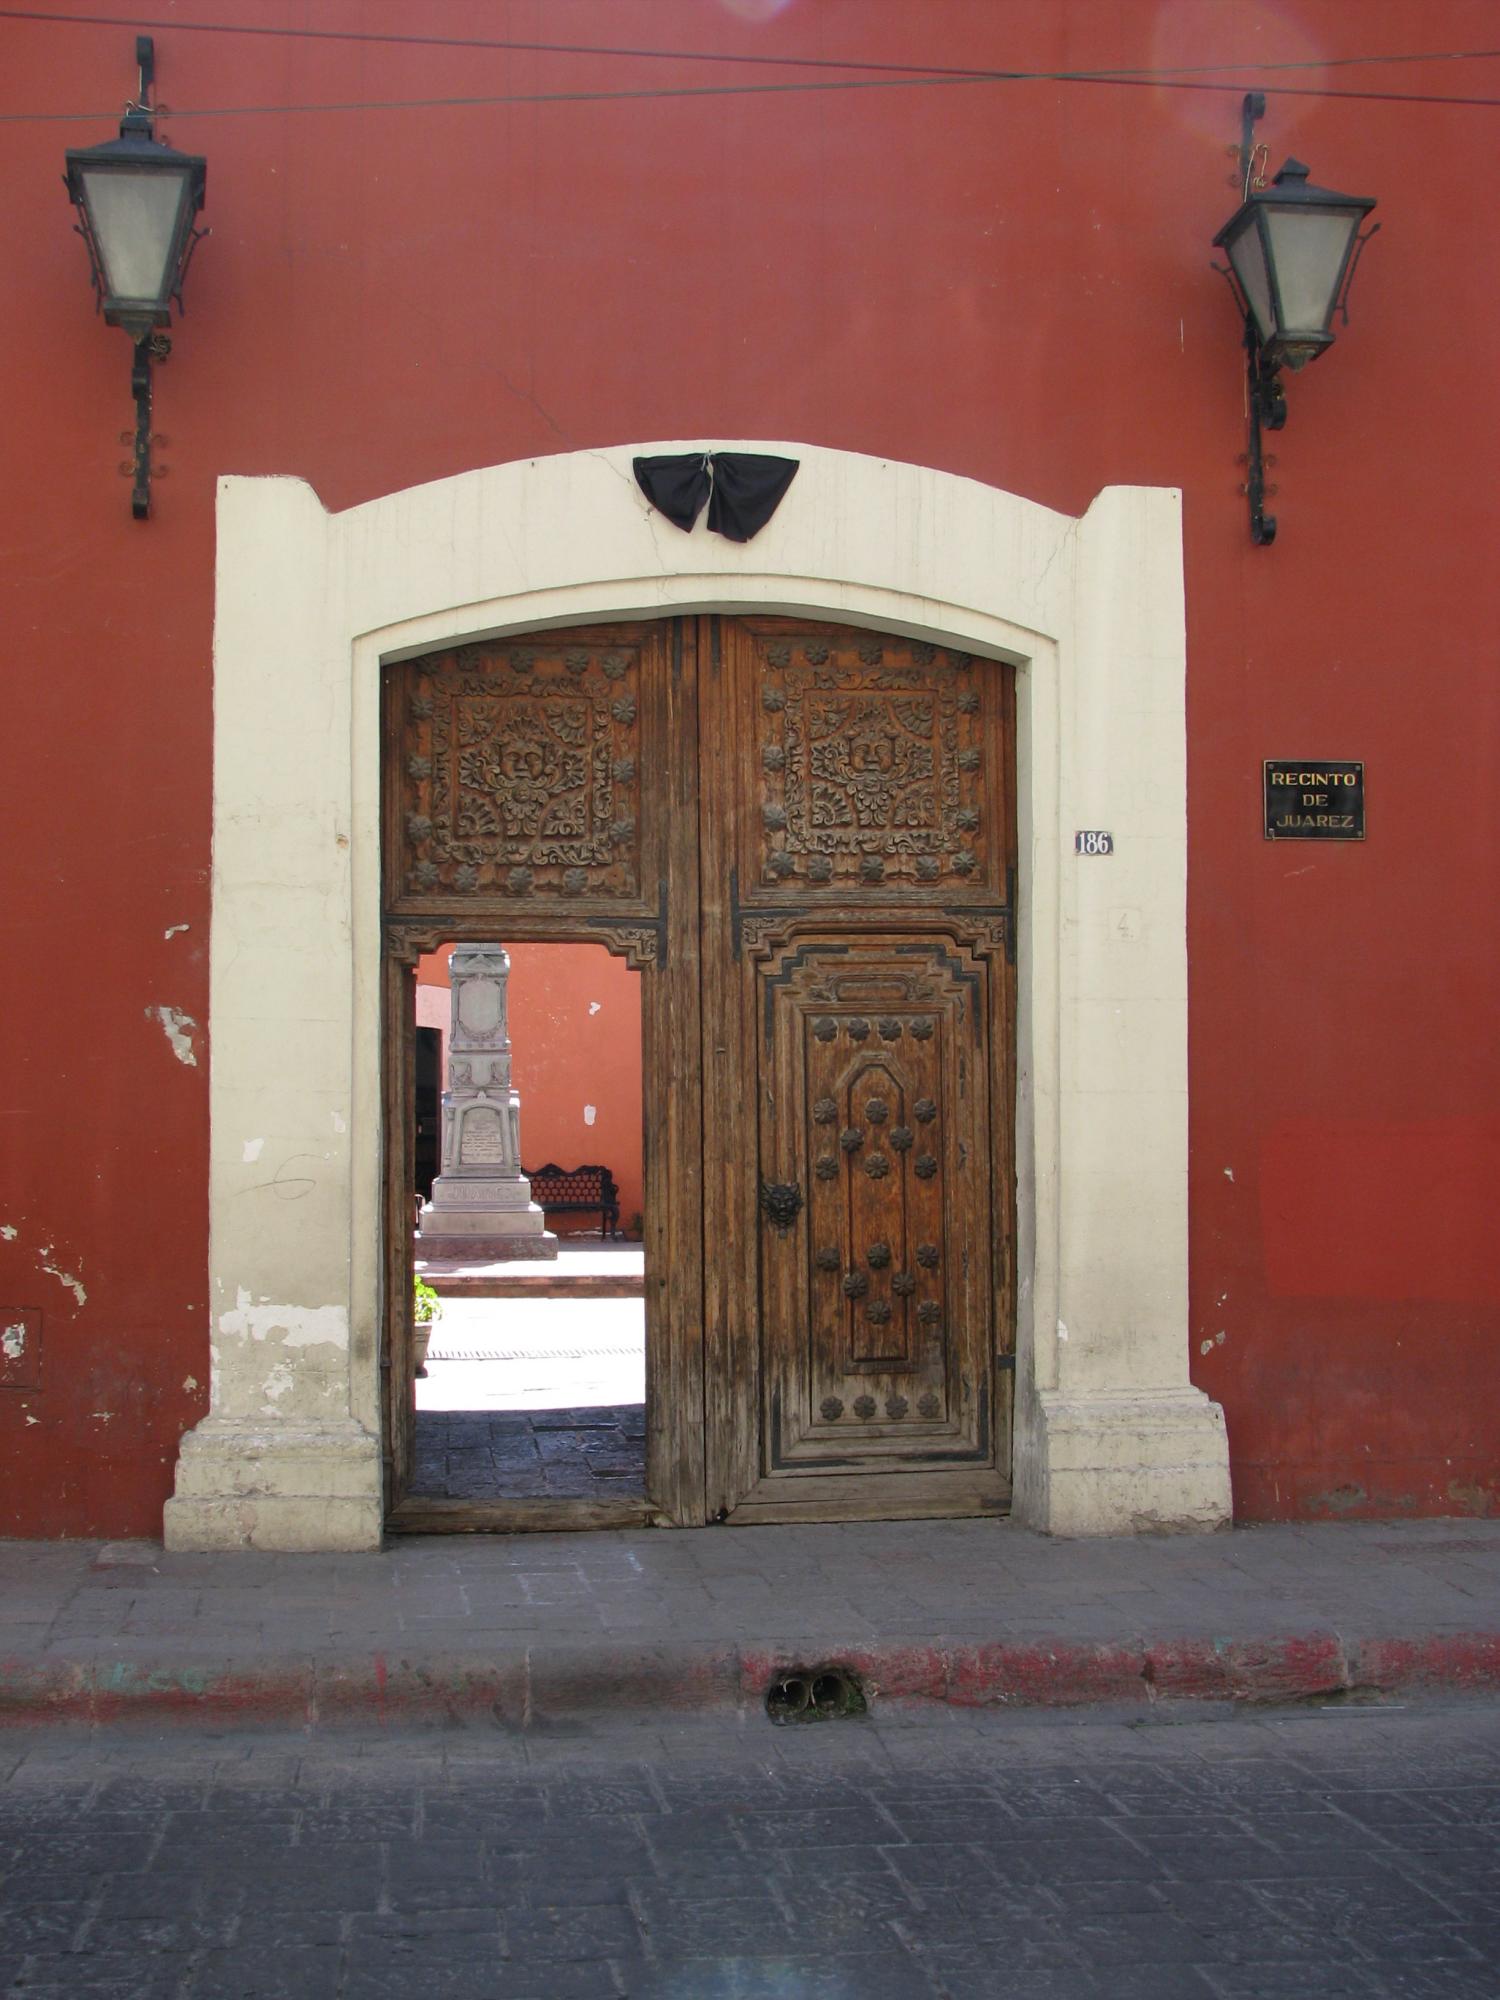 $!Puerta del Recinto de Juárez, la entrada a un espacio que le rinde culto a este personaje histórico de nuestro país.